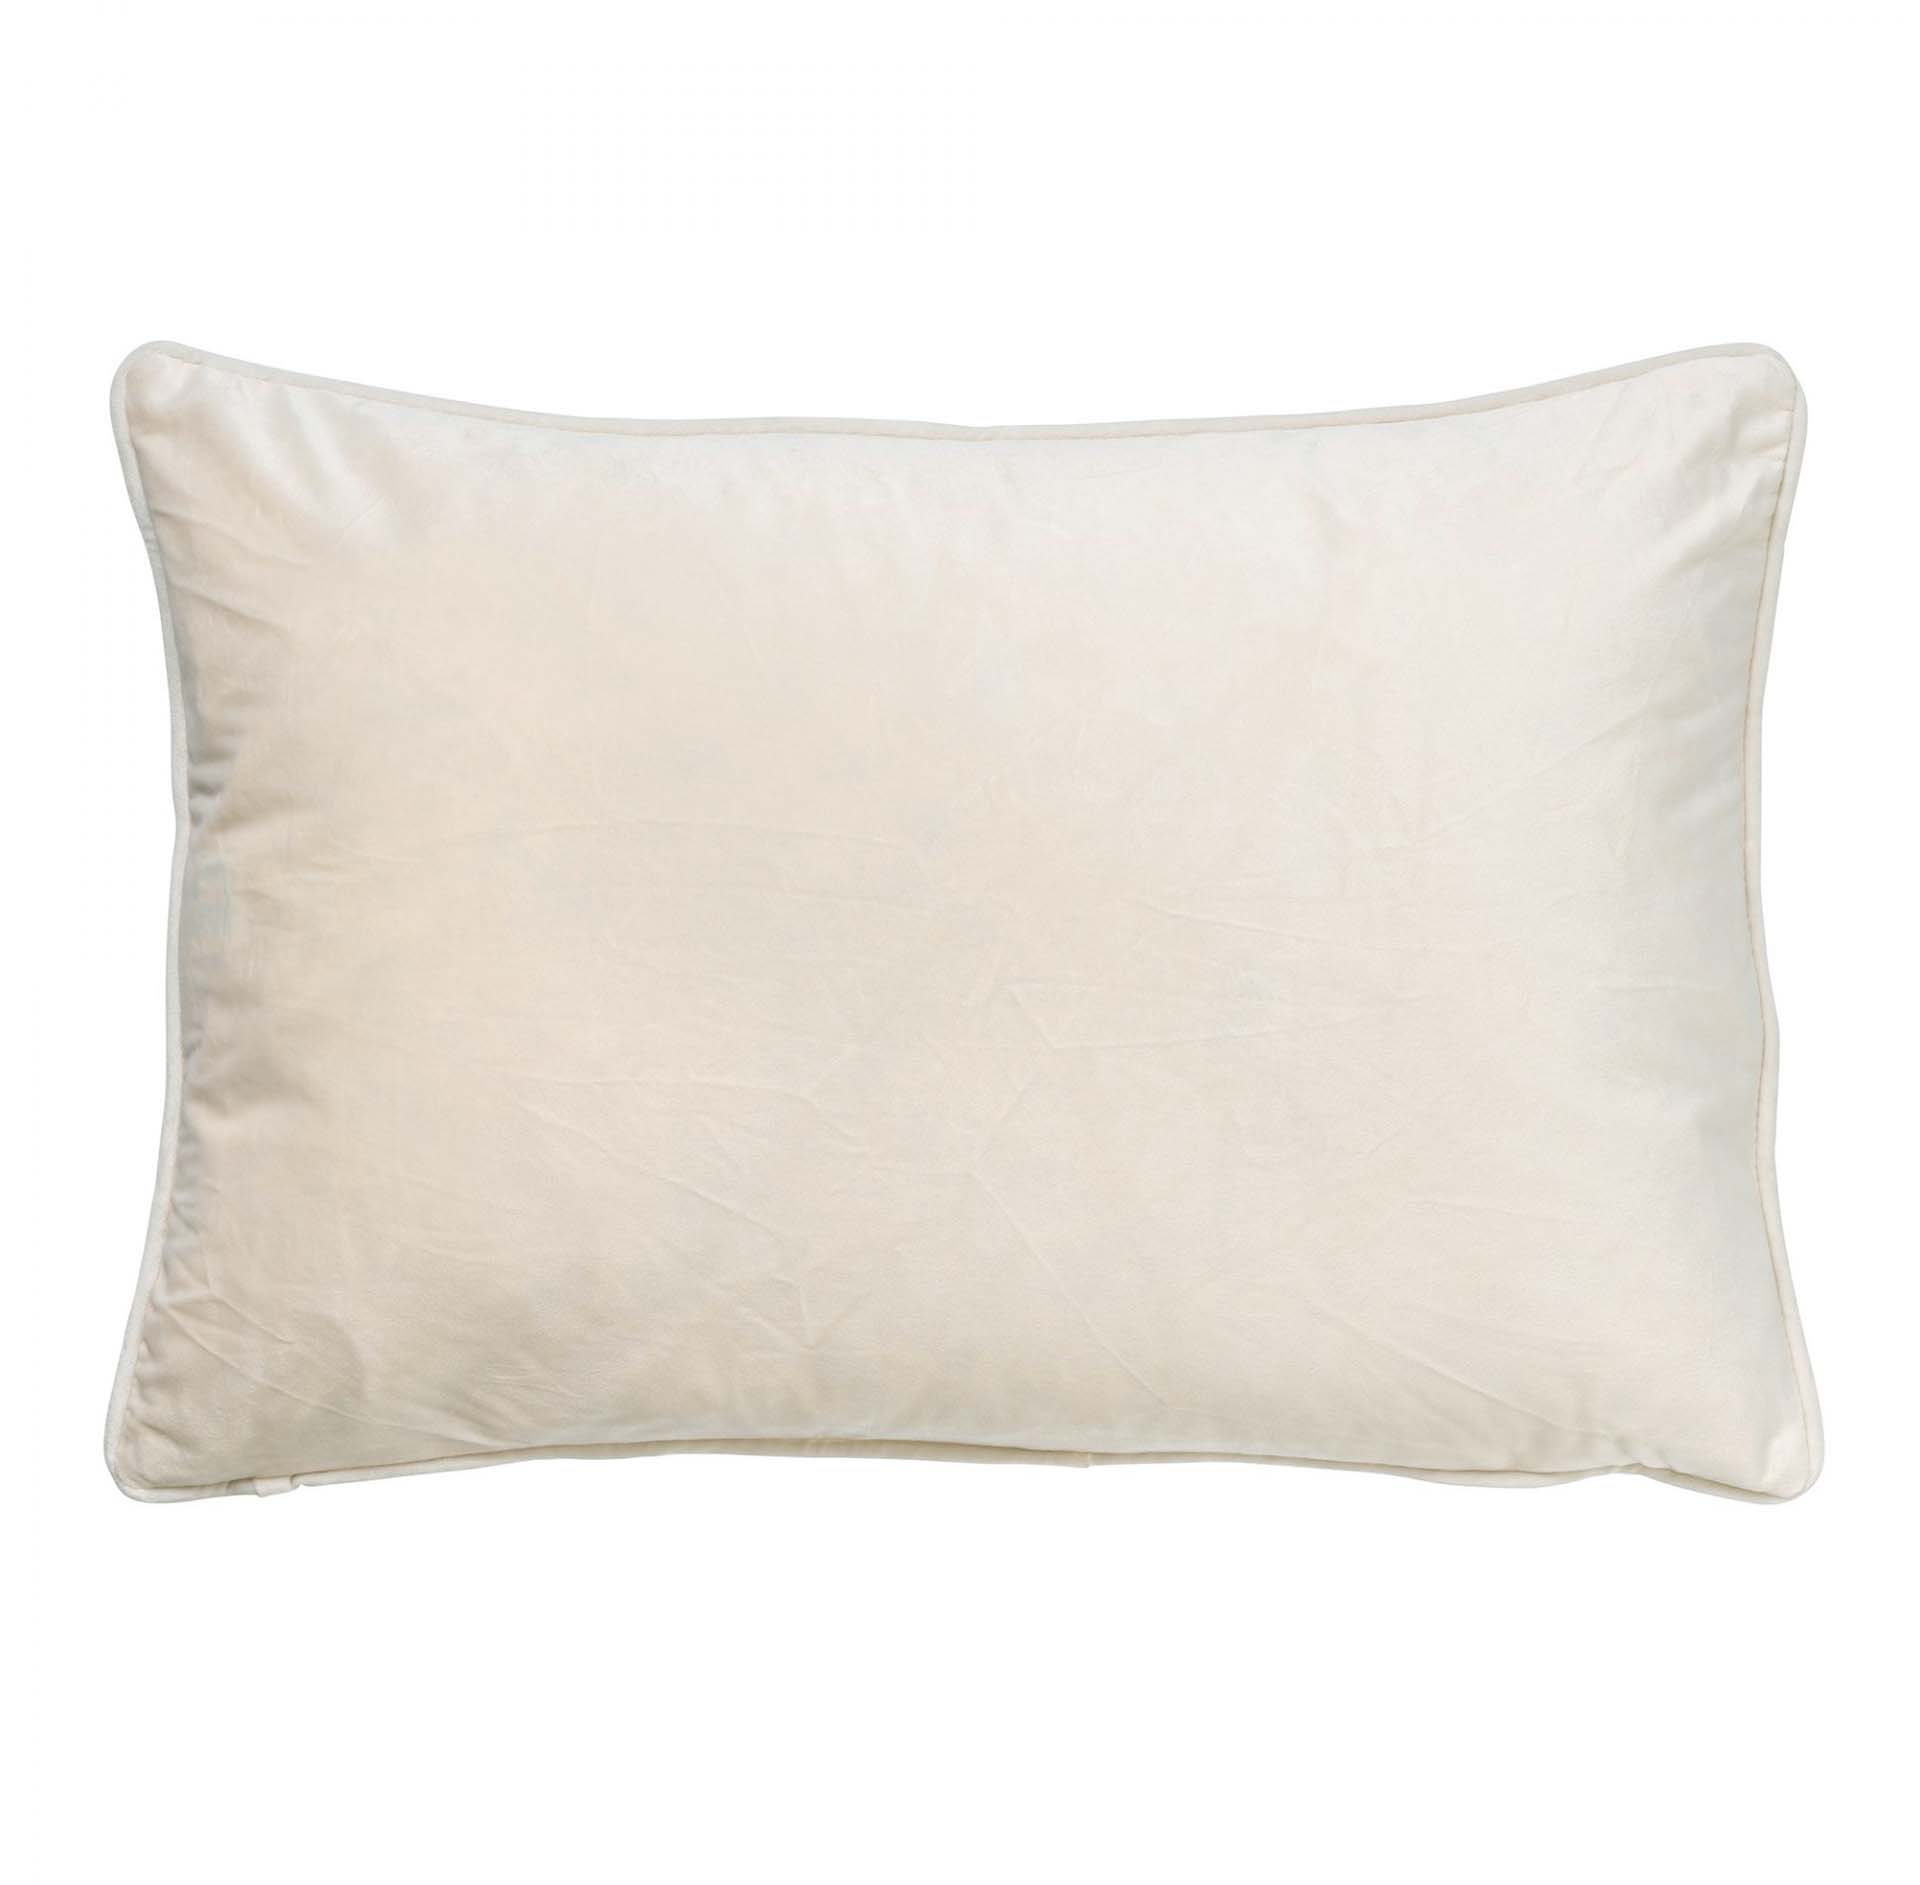 FINN - Cushion cover velvet 40x60 cm - Snow White - white / off-white